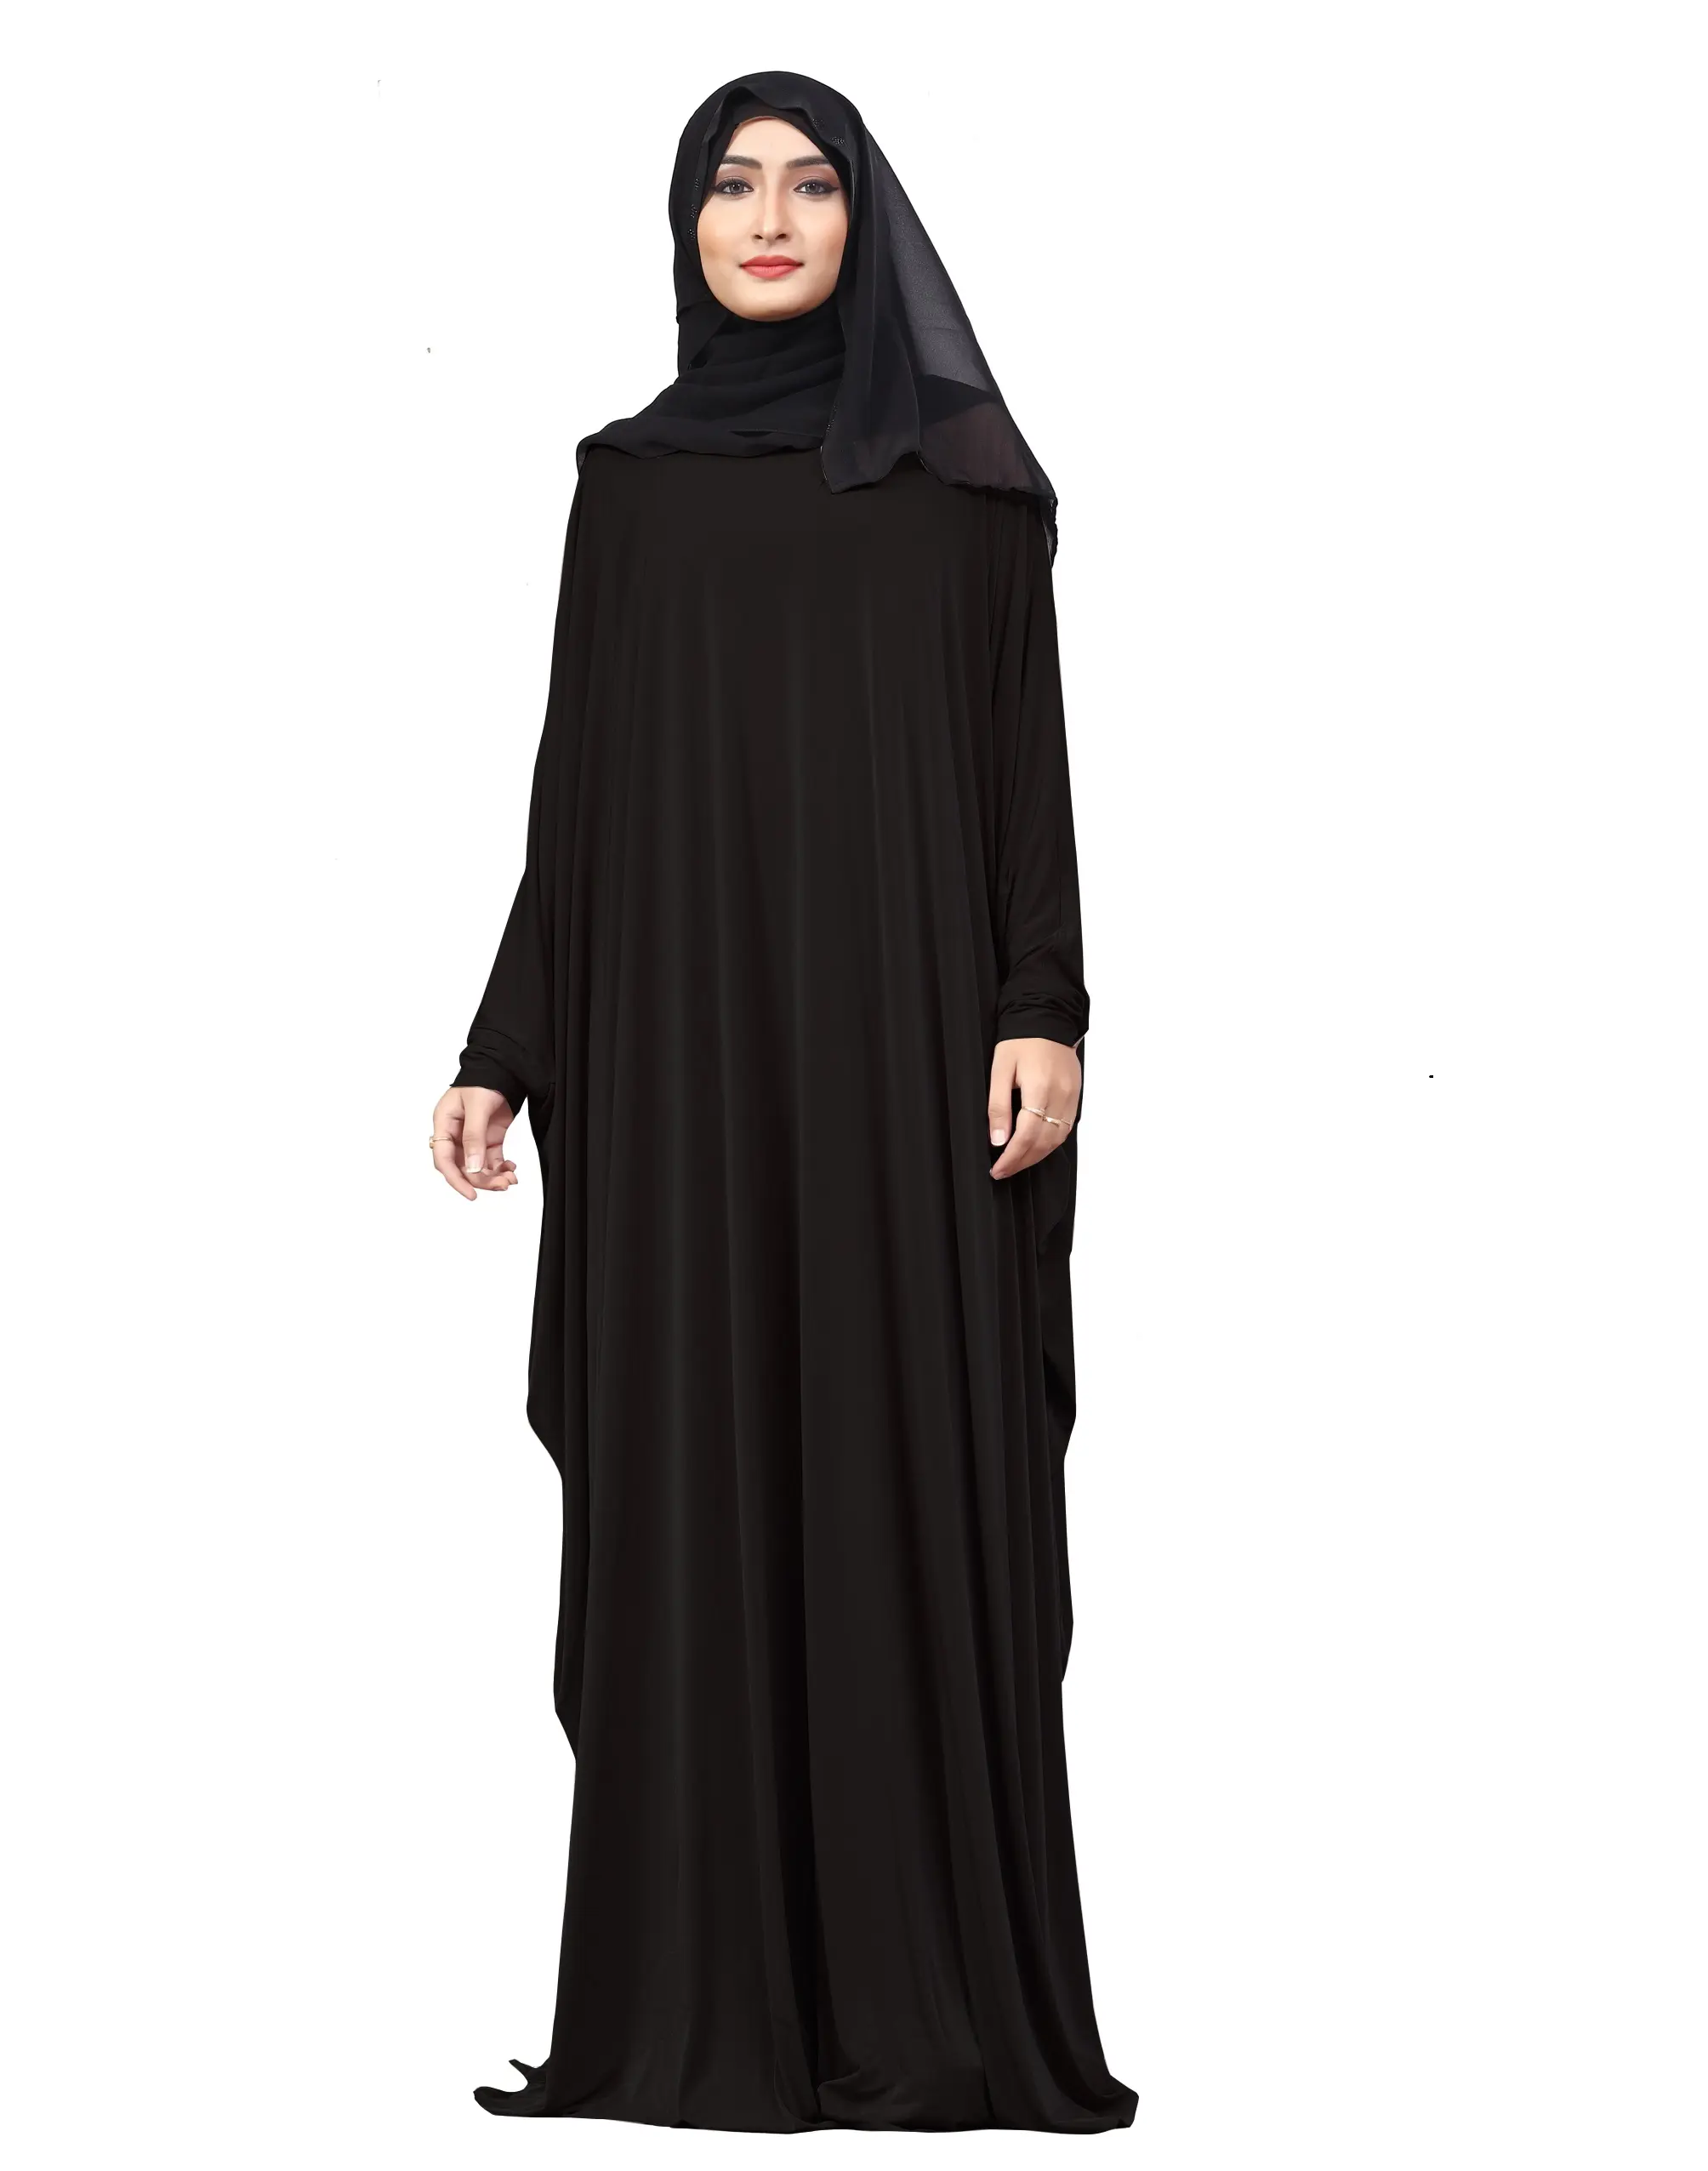 สีดำธรรมดาขนาดฟรีภาษาอาหรับ Lykra Abaya กับชีฟอง Dupatta สำหรับผู้หญิง